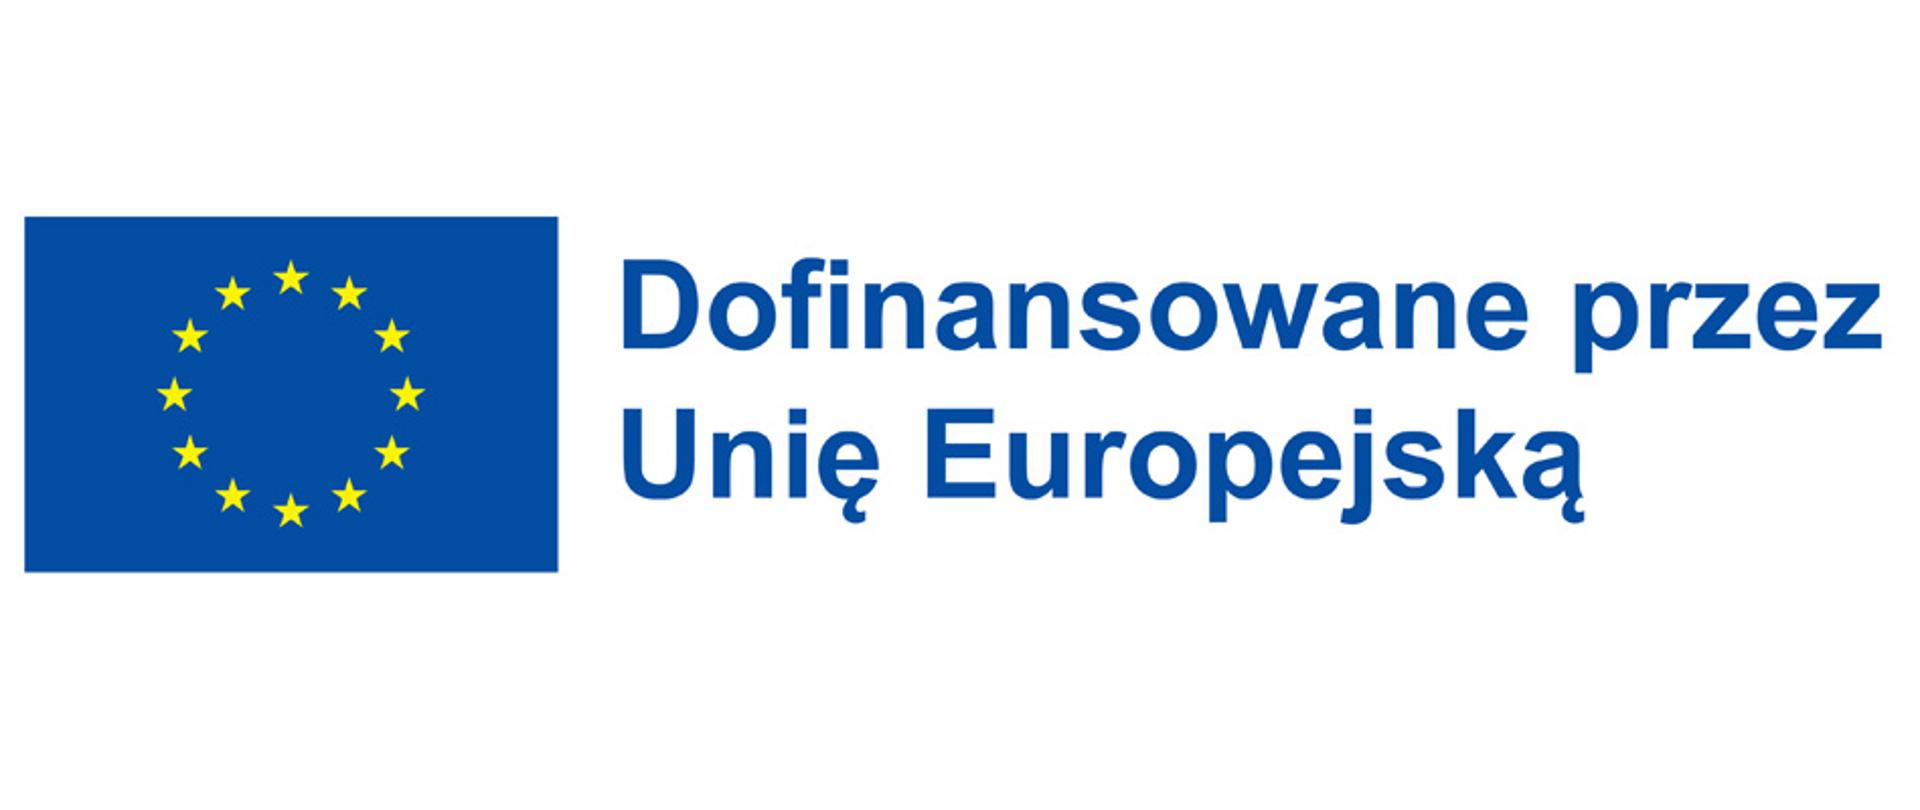 napis Dofinansowane przez Unię Europejską oraz flaga UE